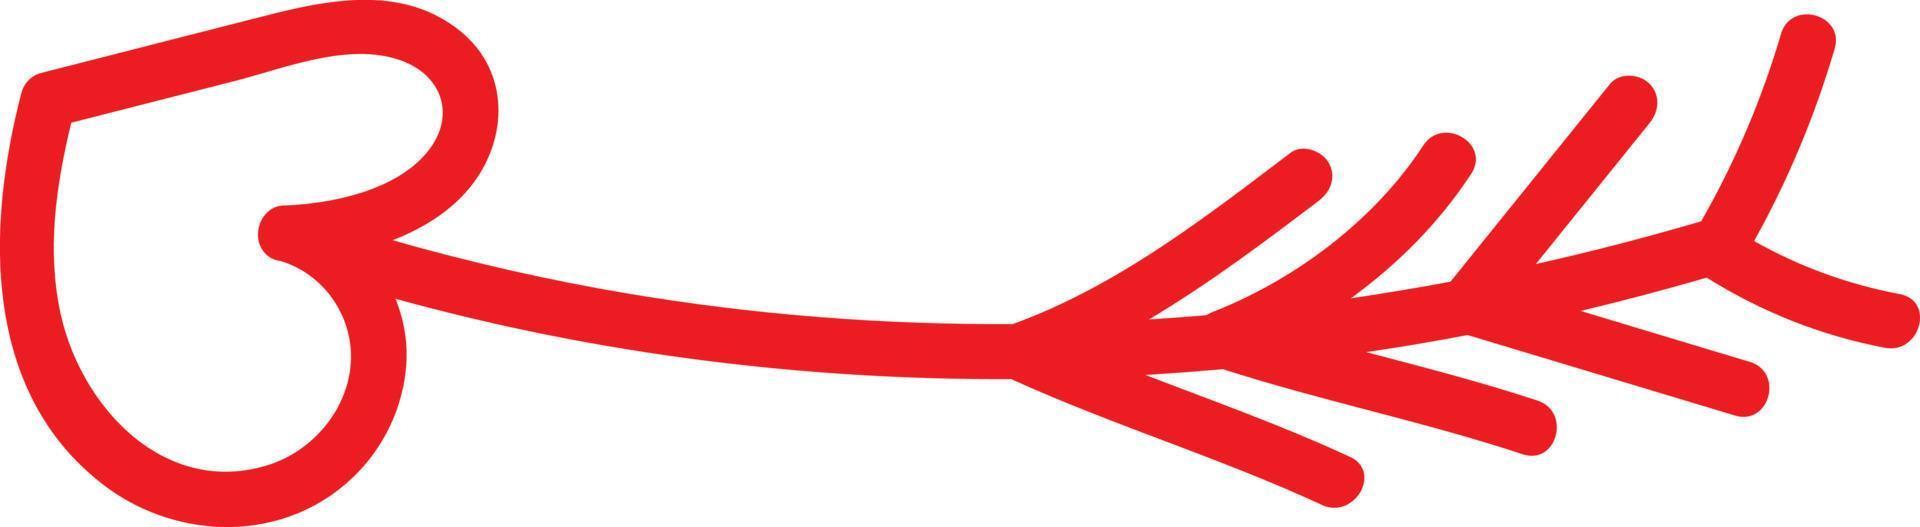 Flecha roja con un puntero en forma de corazón , ilustración, vector sobre fondo blanco.